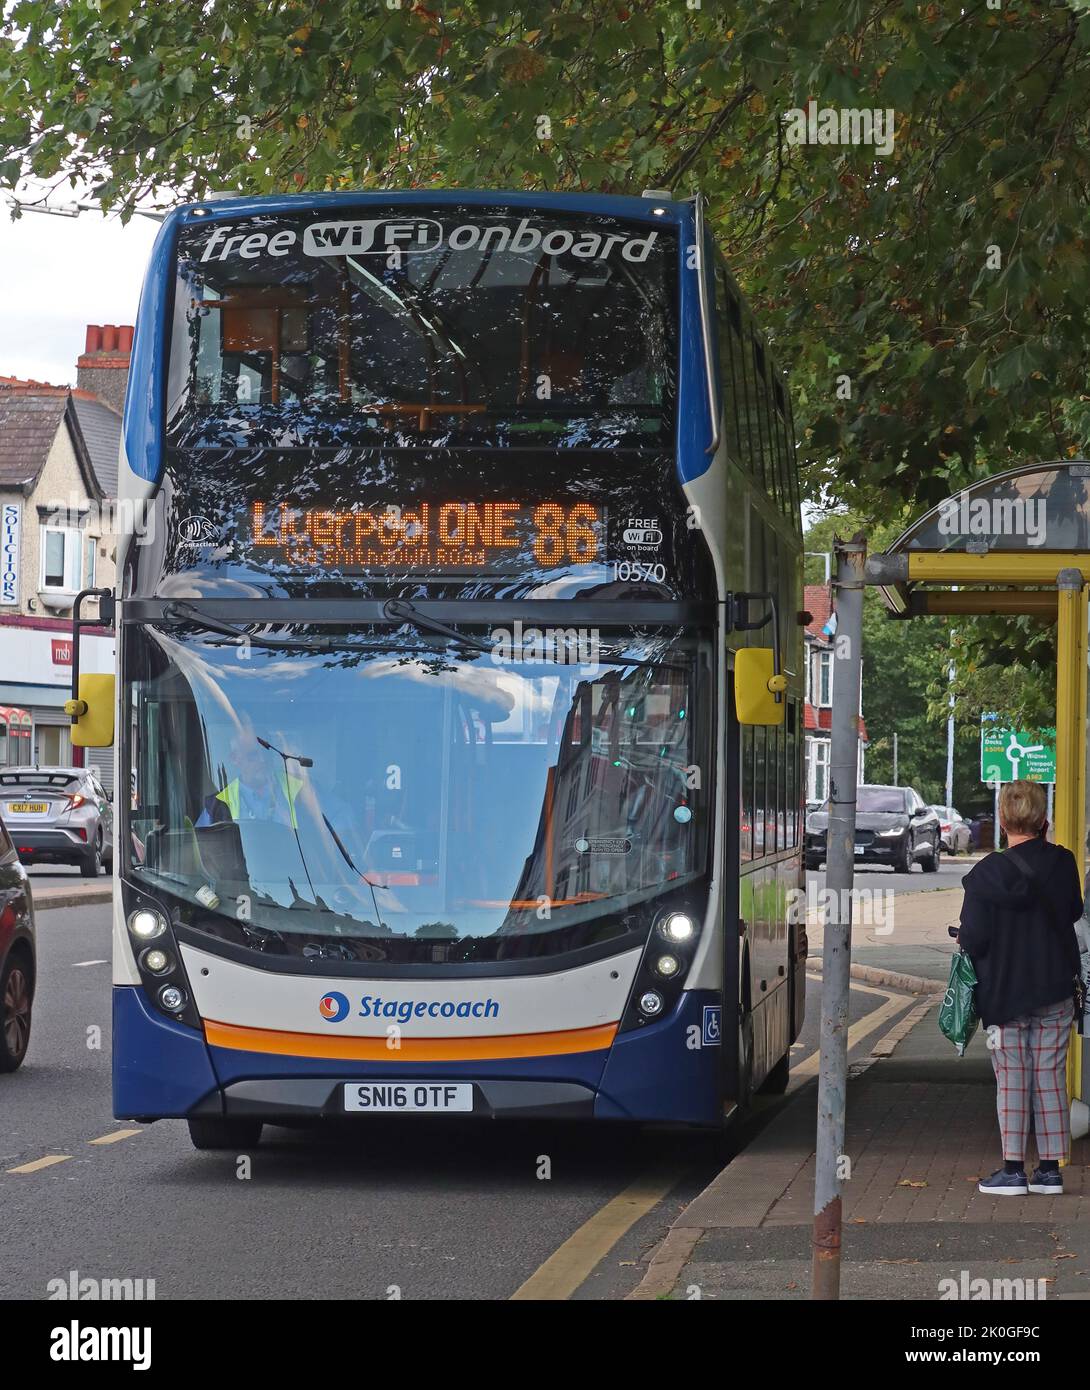 Liverpool One, 86 Stagecoach bus service, à un arrêt de bus Smithdown Road, Liverpool, Merseyside, Angleterre, Royaume-Uni, L15 Banque D'Images